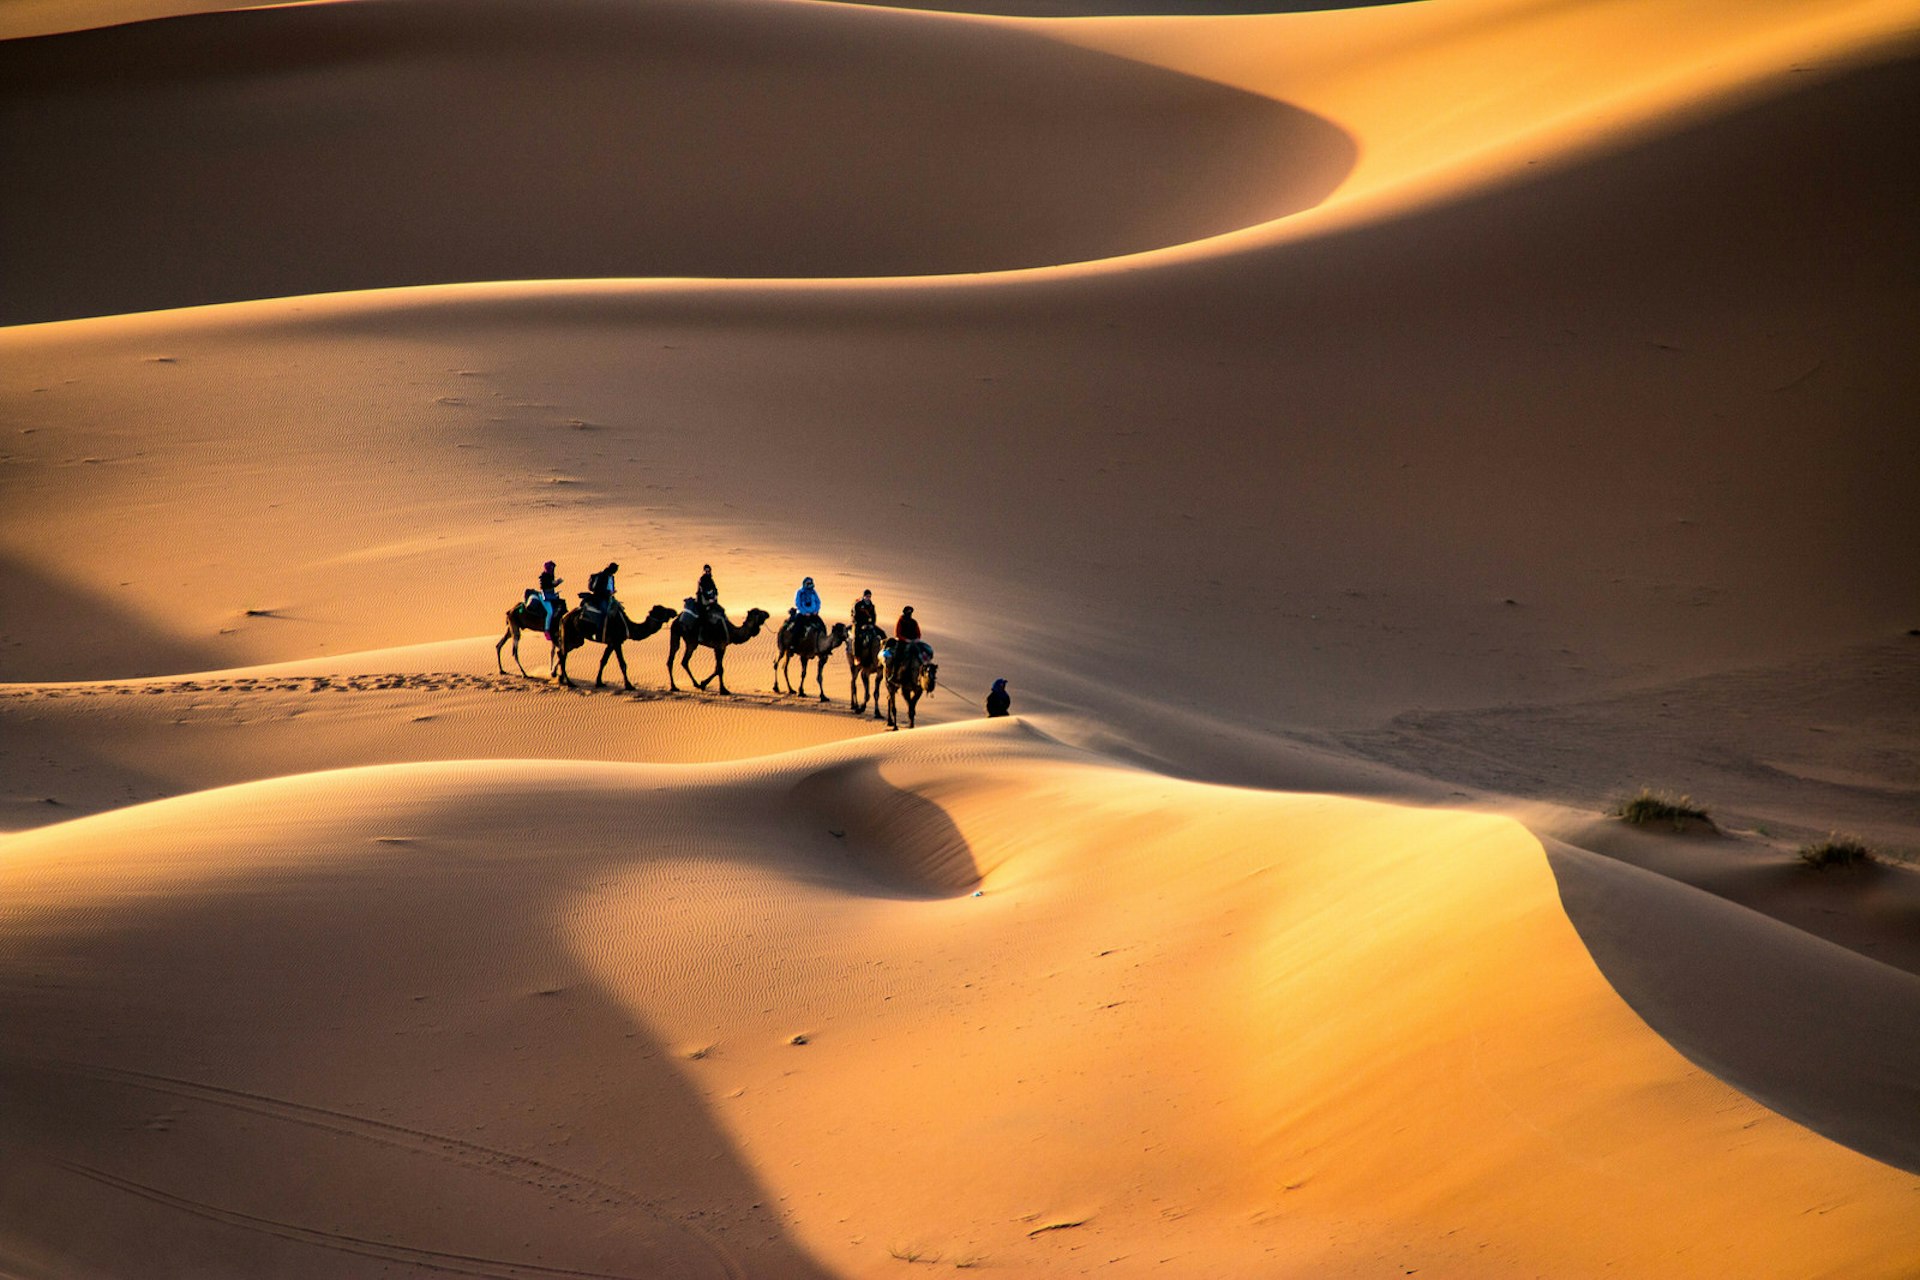 A caravan walking through the golden sand dunes of Erg Chebbi near Merzouga in Morocco, Sahara, Africa © evenfh / Shutterstock